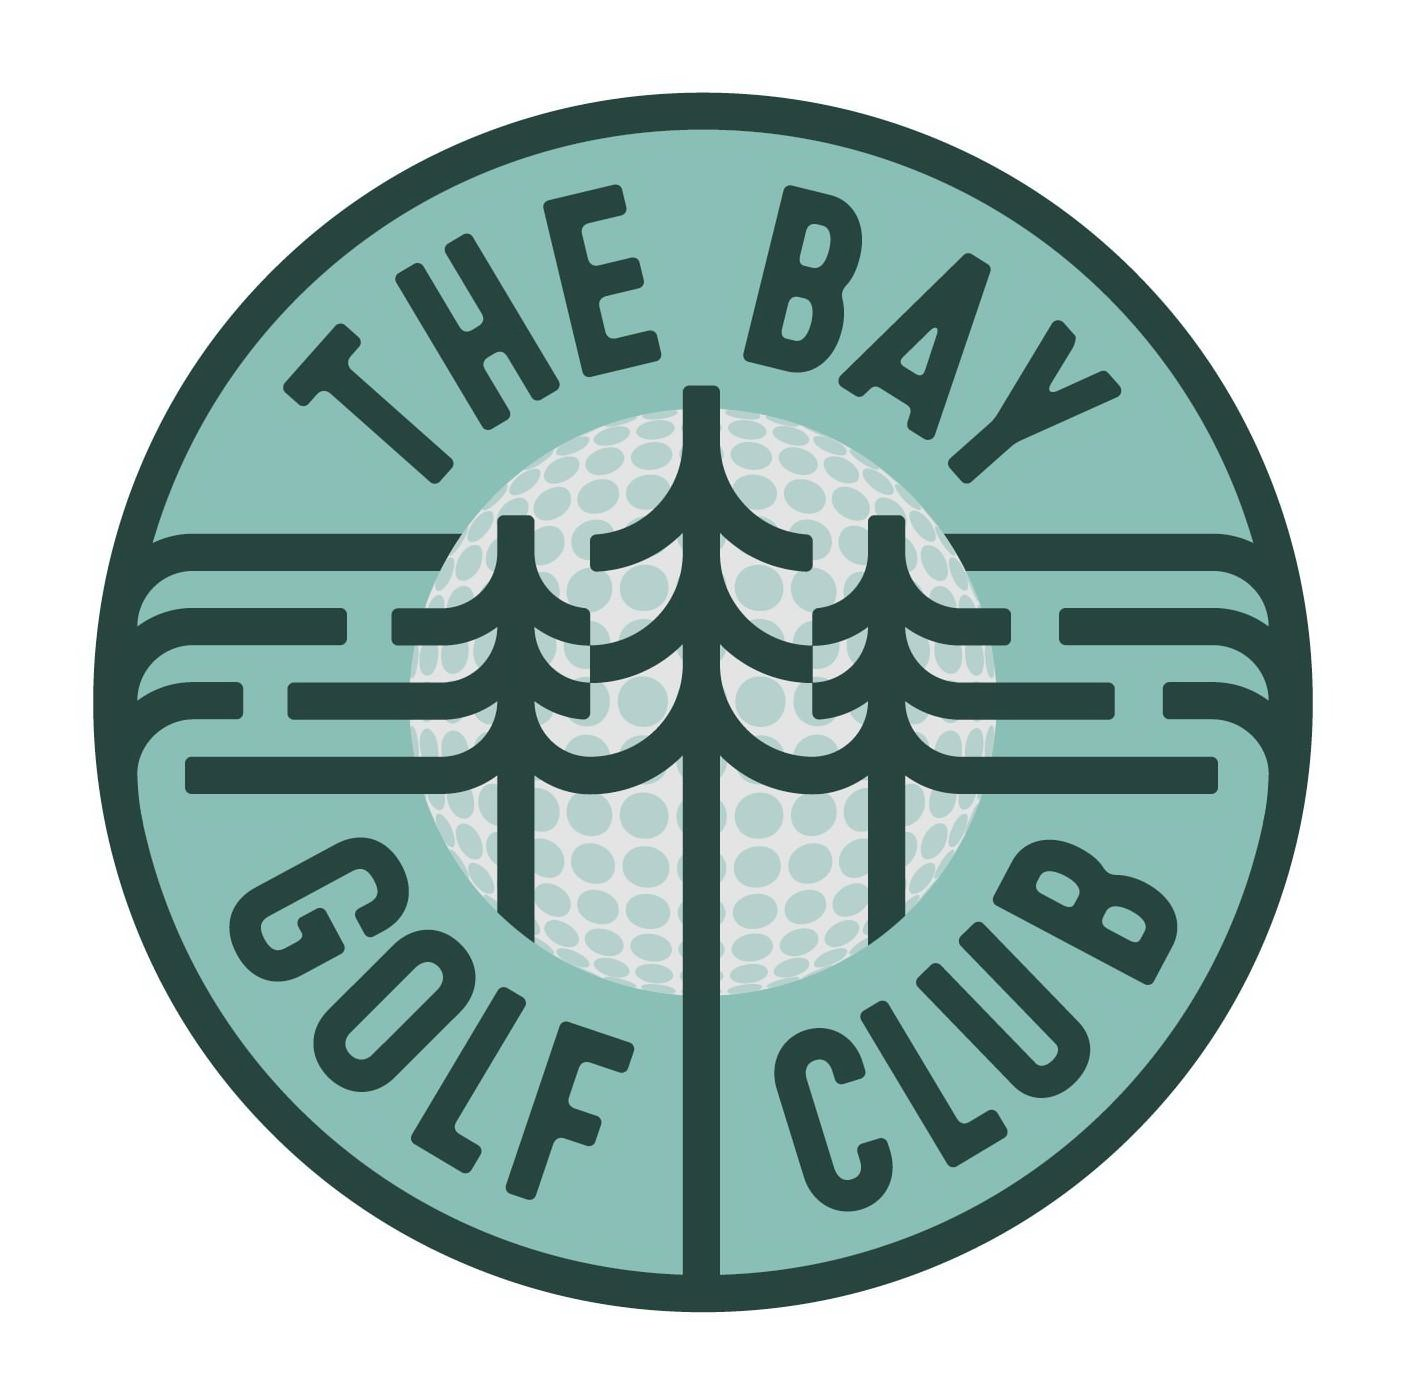  THE BAY GOLF CLUB